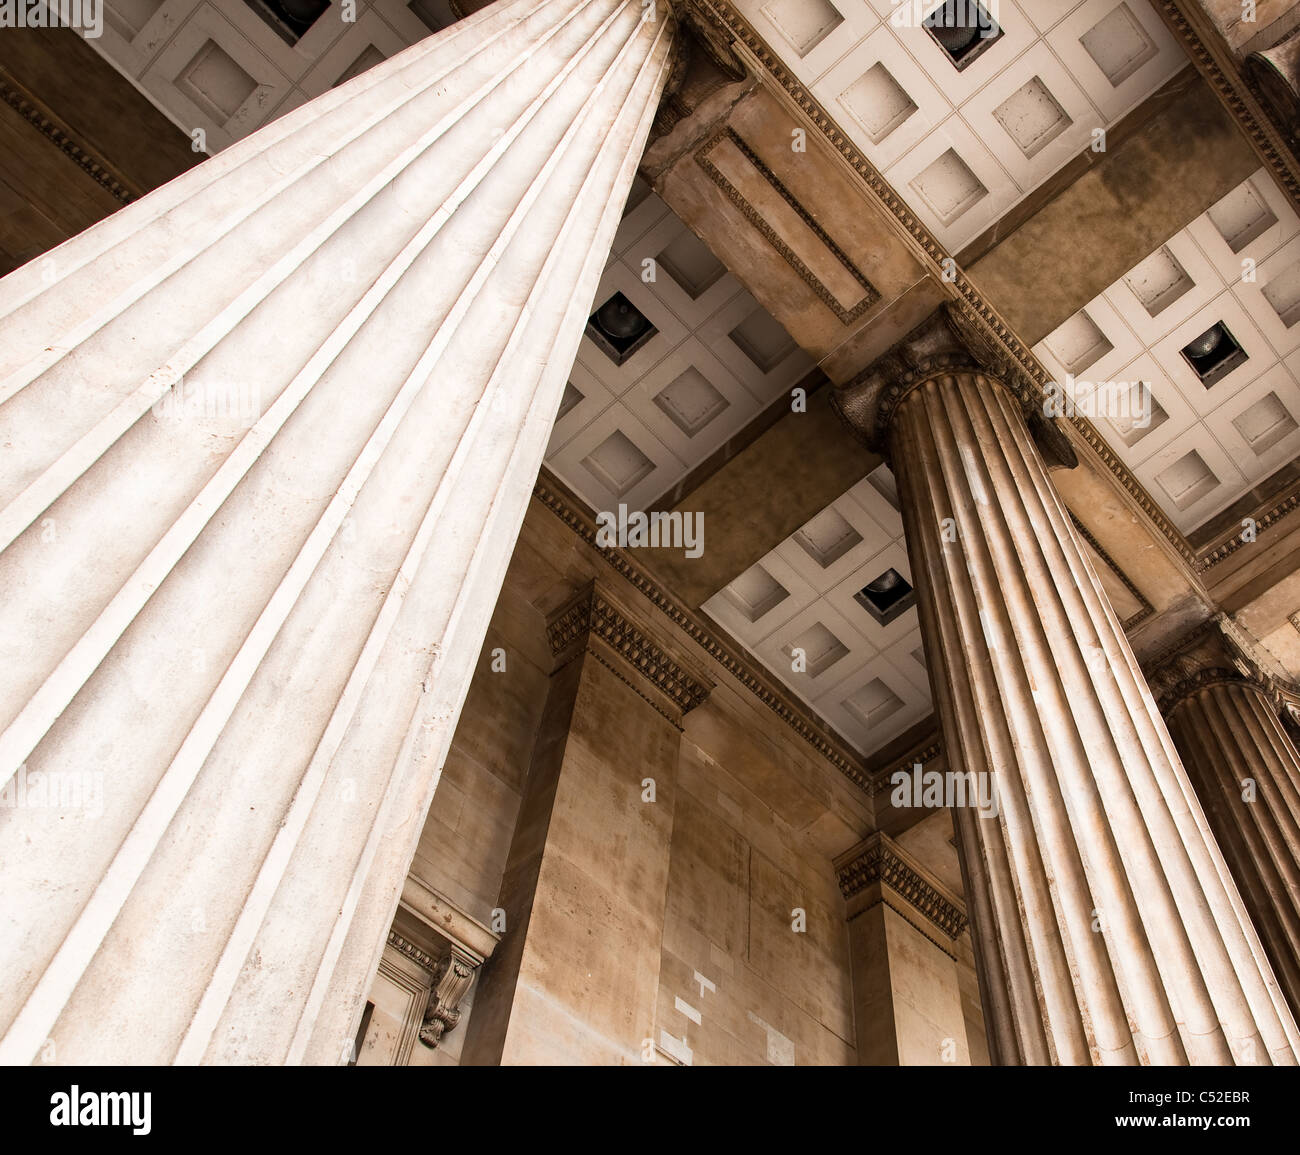 Awesome Säulen am Eingang des britischen Museums. Zeigt die erstaunliche Architektur und Alterungsprozess. Stockfoto